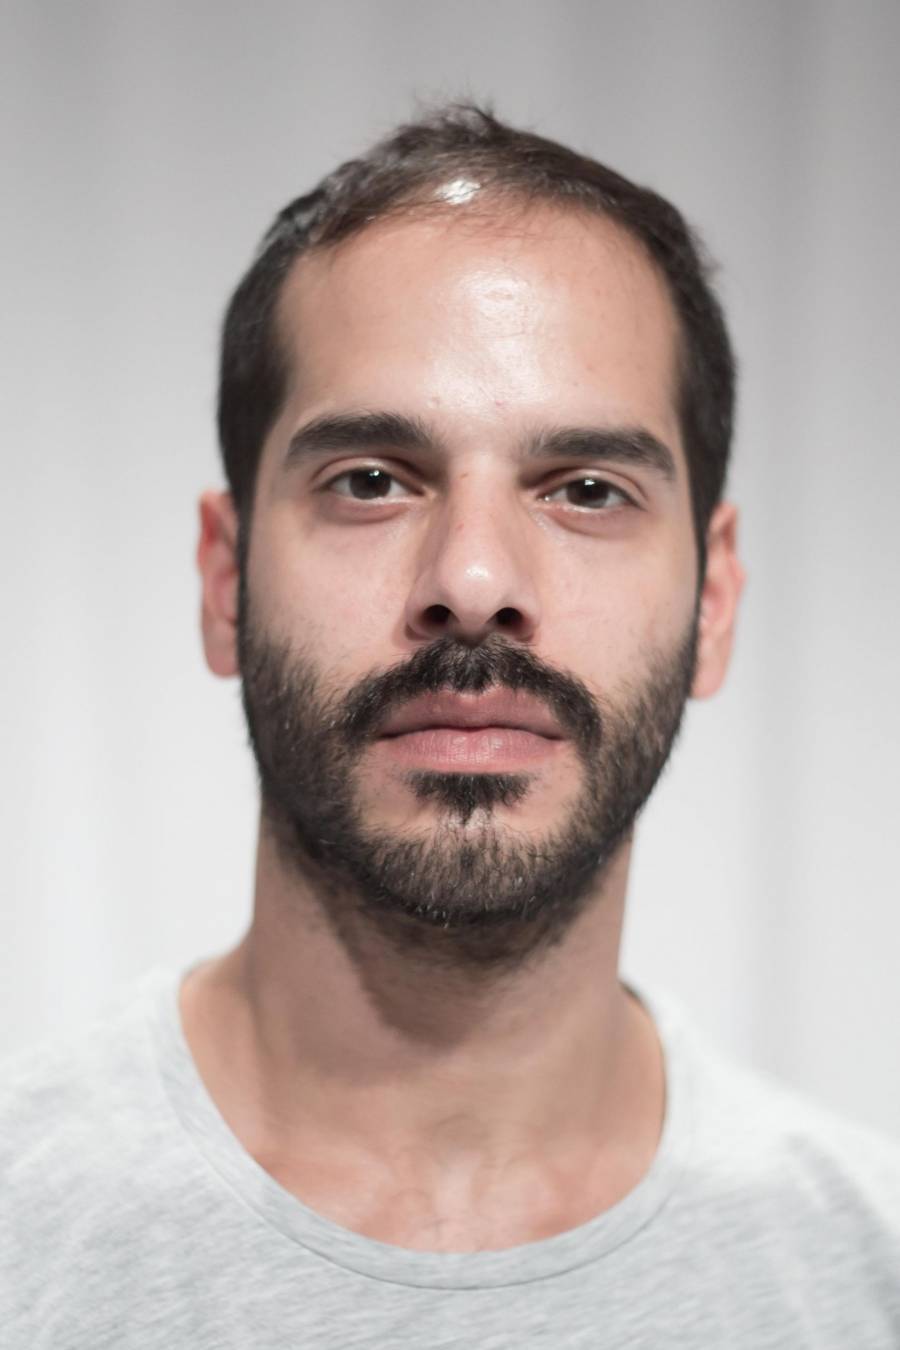 Λάζαρος Βαρτάνης: Ο σκηνοθέτης μιλά για το έργο «Ονόριο, τα ανομήματα ενός εγκληματία»